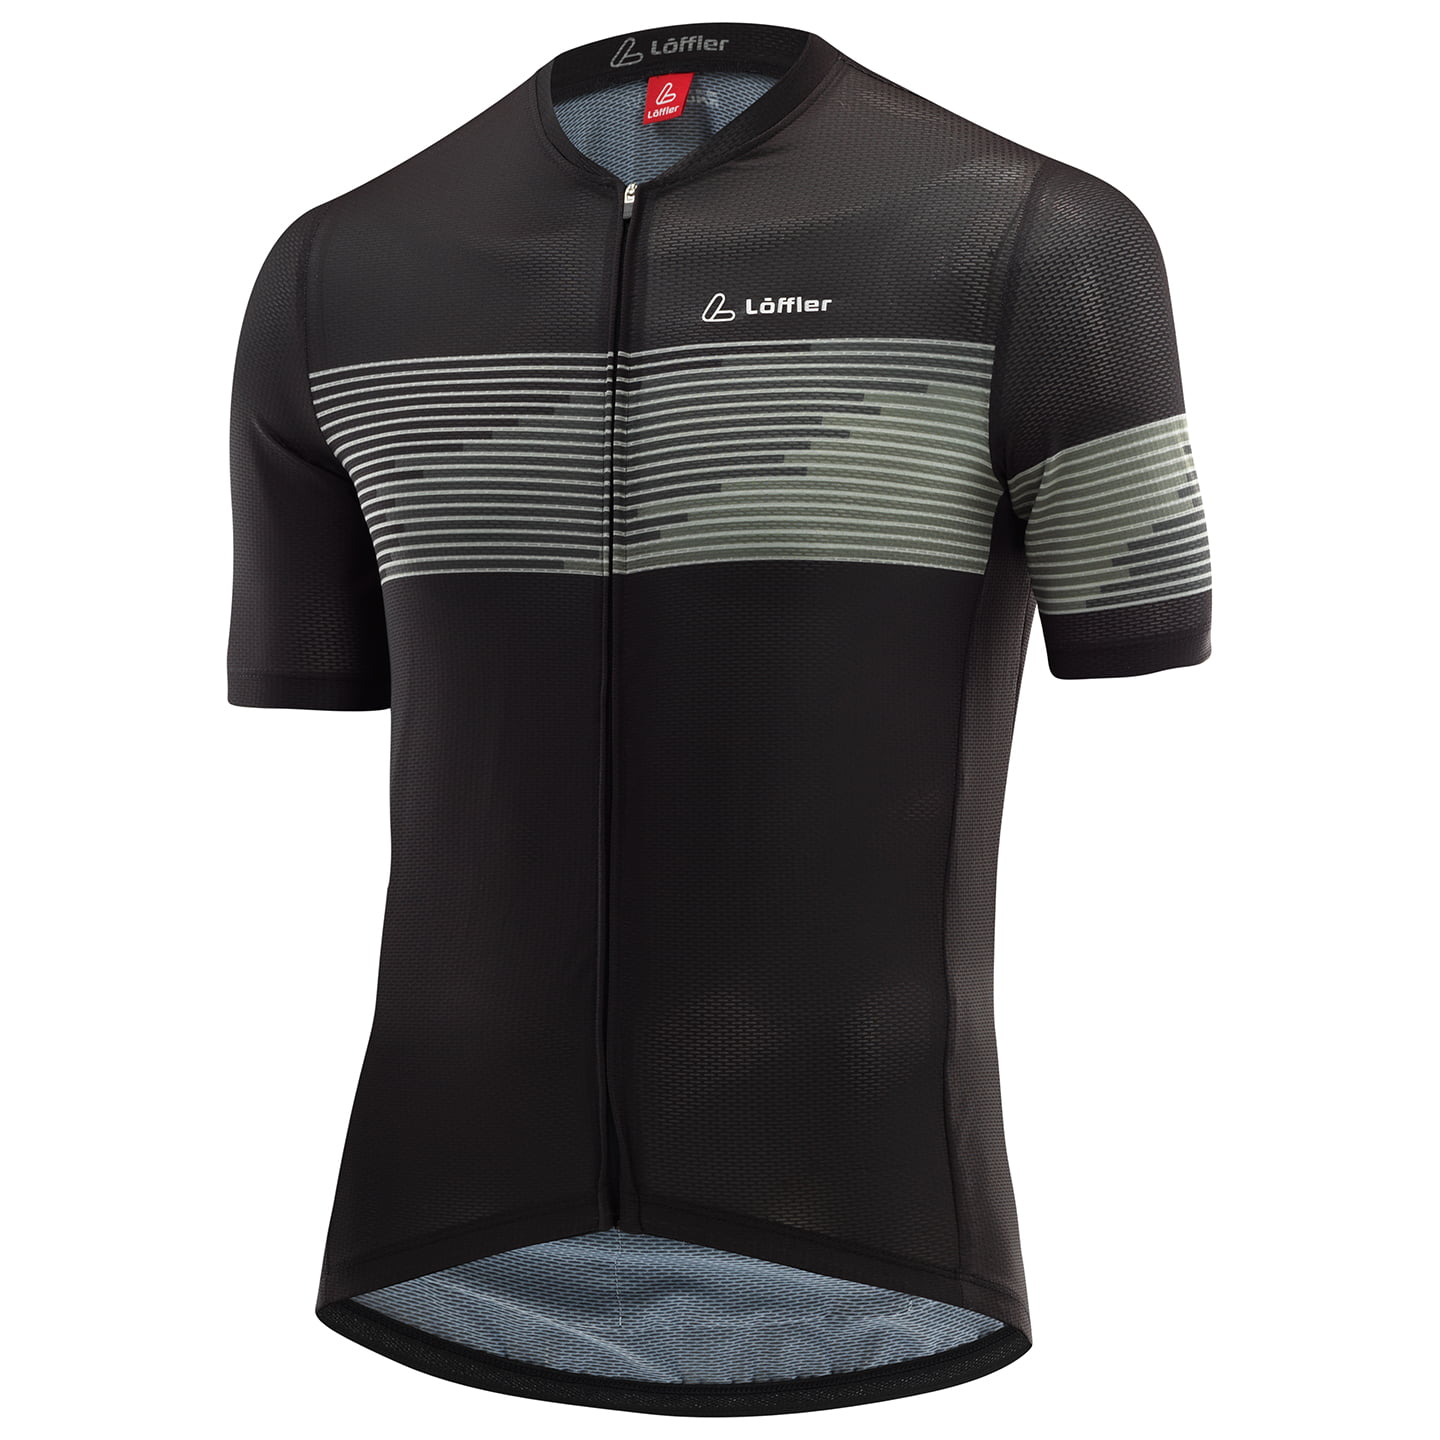 LOFFLER Spectro Vent Short Sleeve Jersey Short Sleeve Jersey, for men, size M, Cycling jersey, Cycling clothing